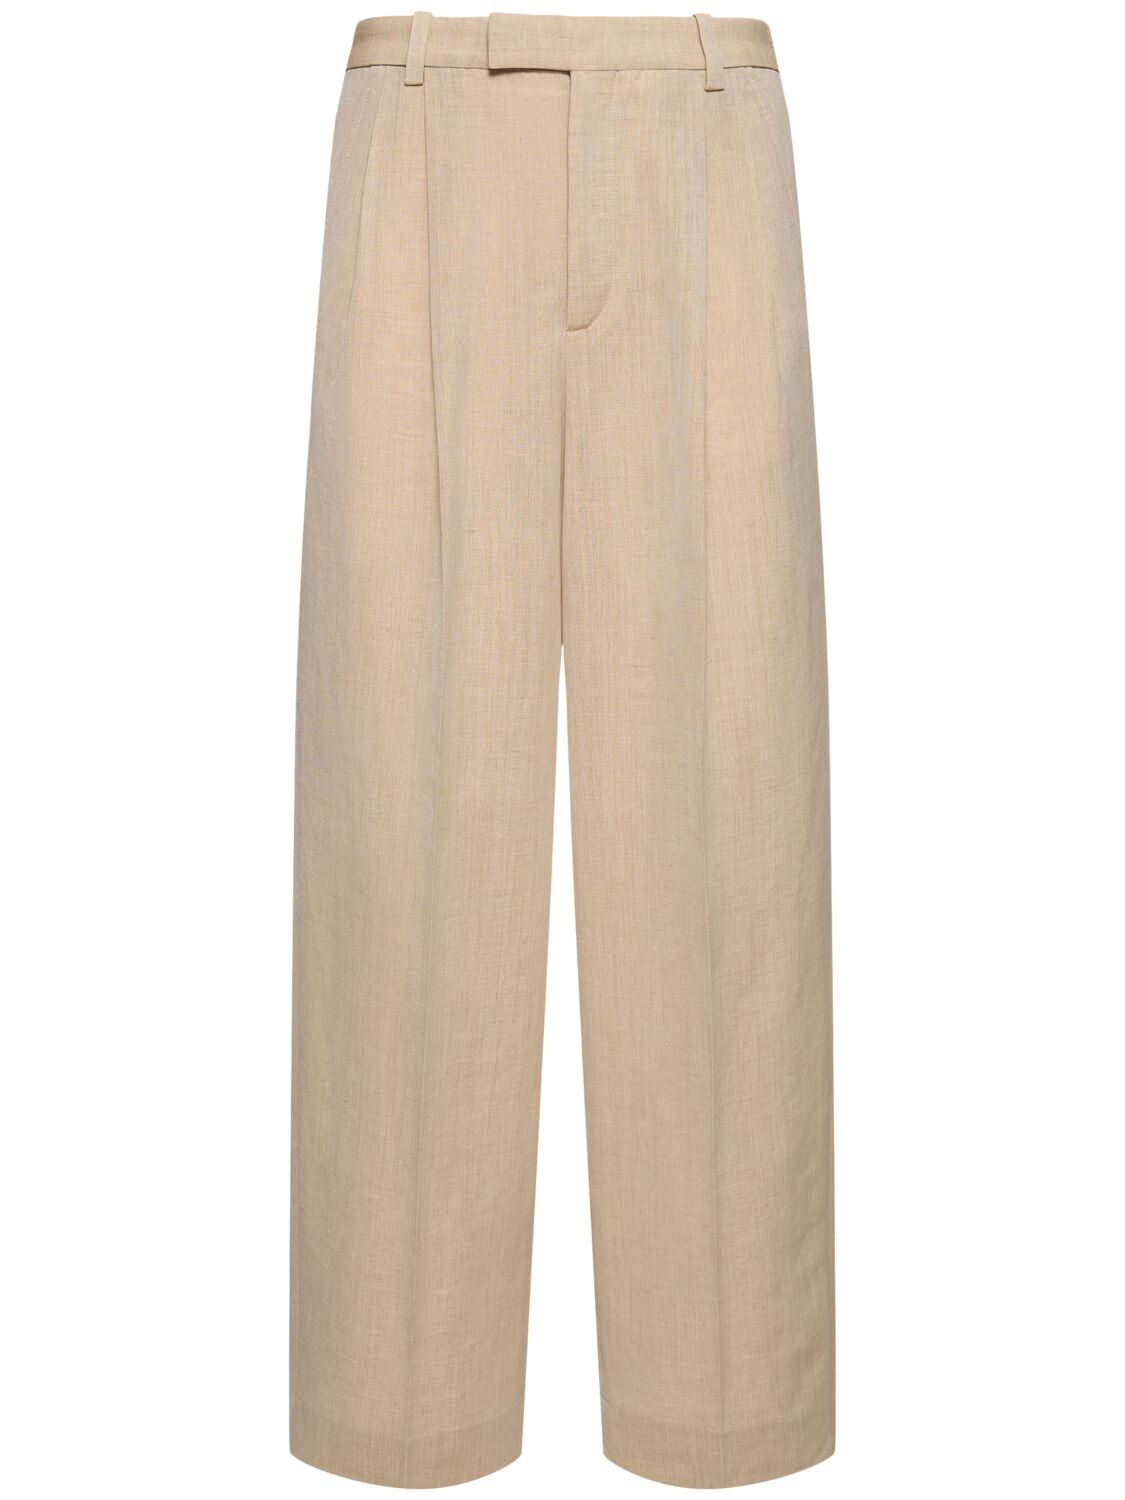 Image of Le Pantalon Titolo Linen & Wool Pants